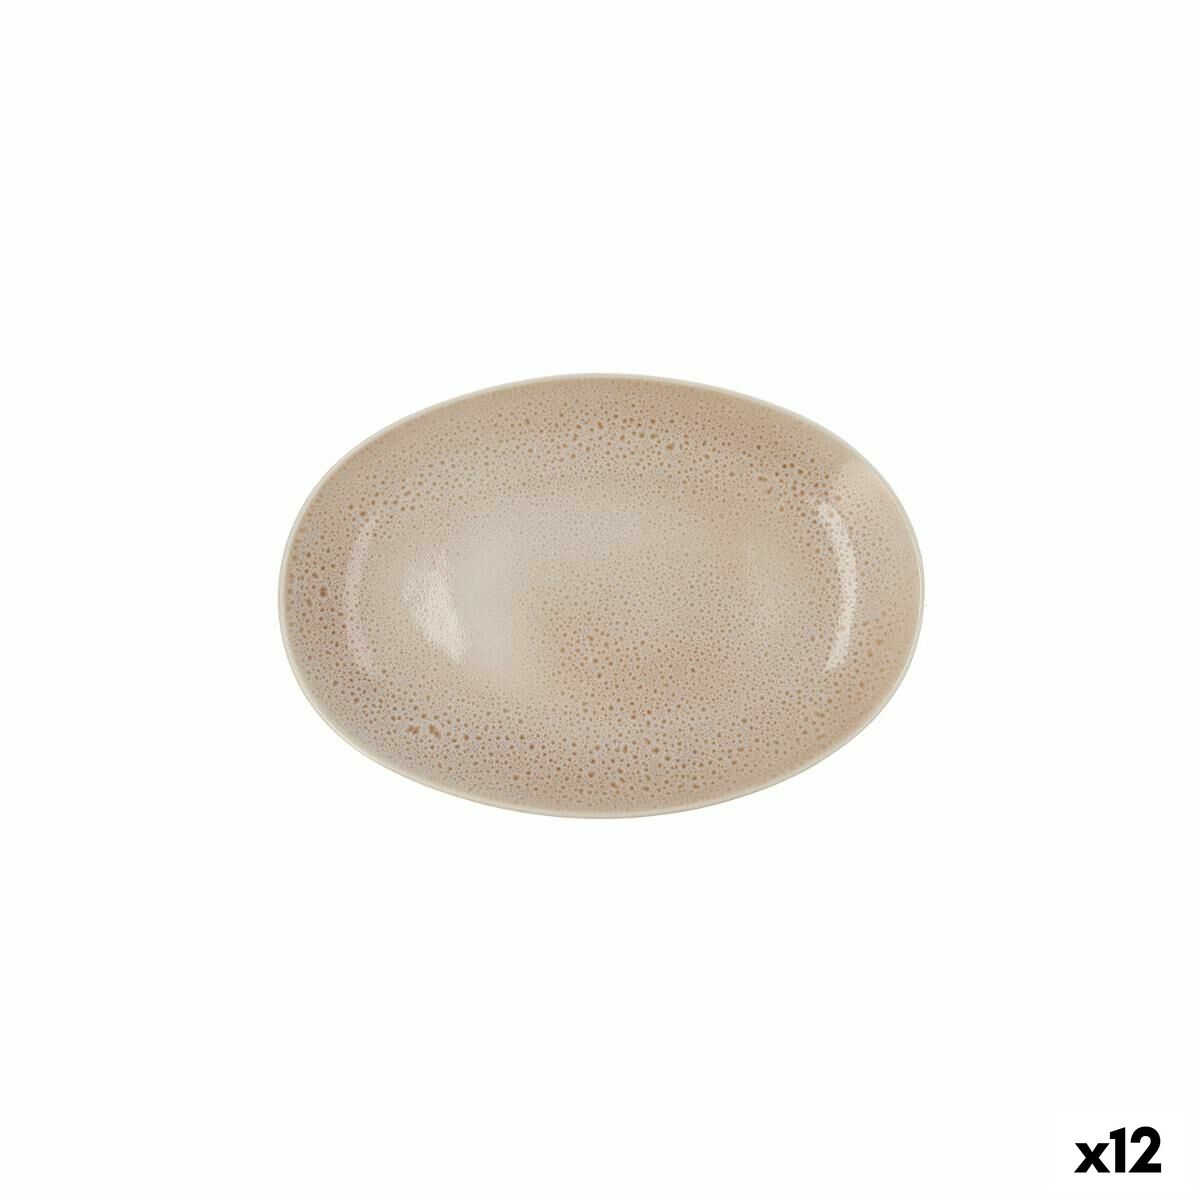 Vassoio per aperitivi Ariane Porous Ceramica Beige Ø 26 cm (12 Unità)